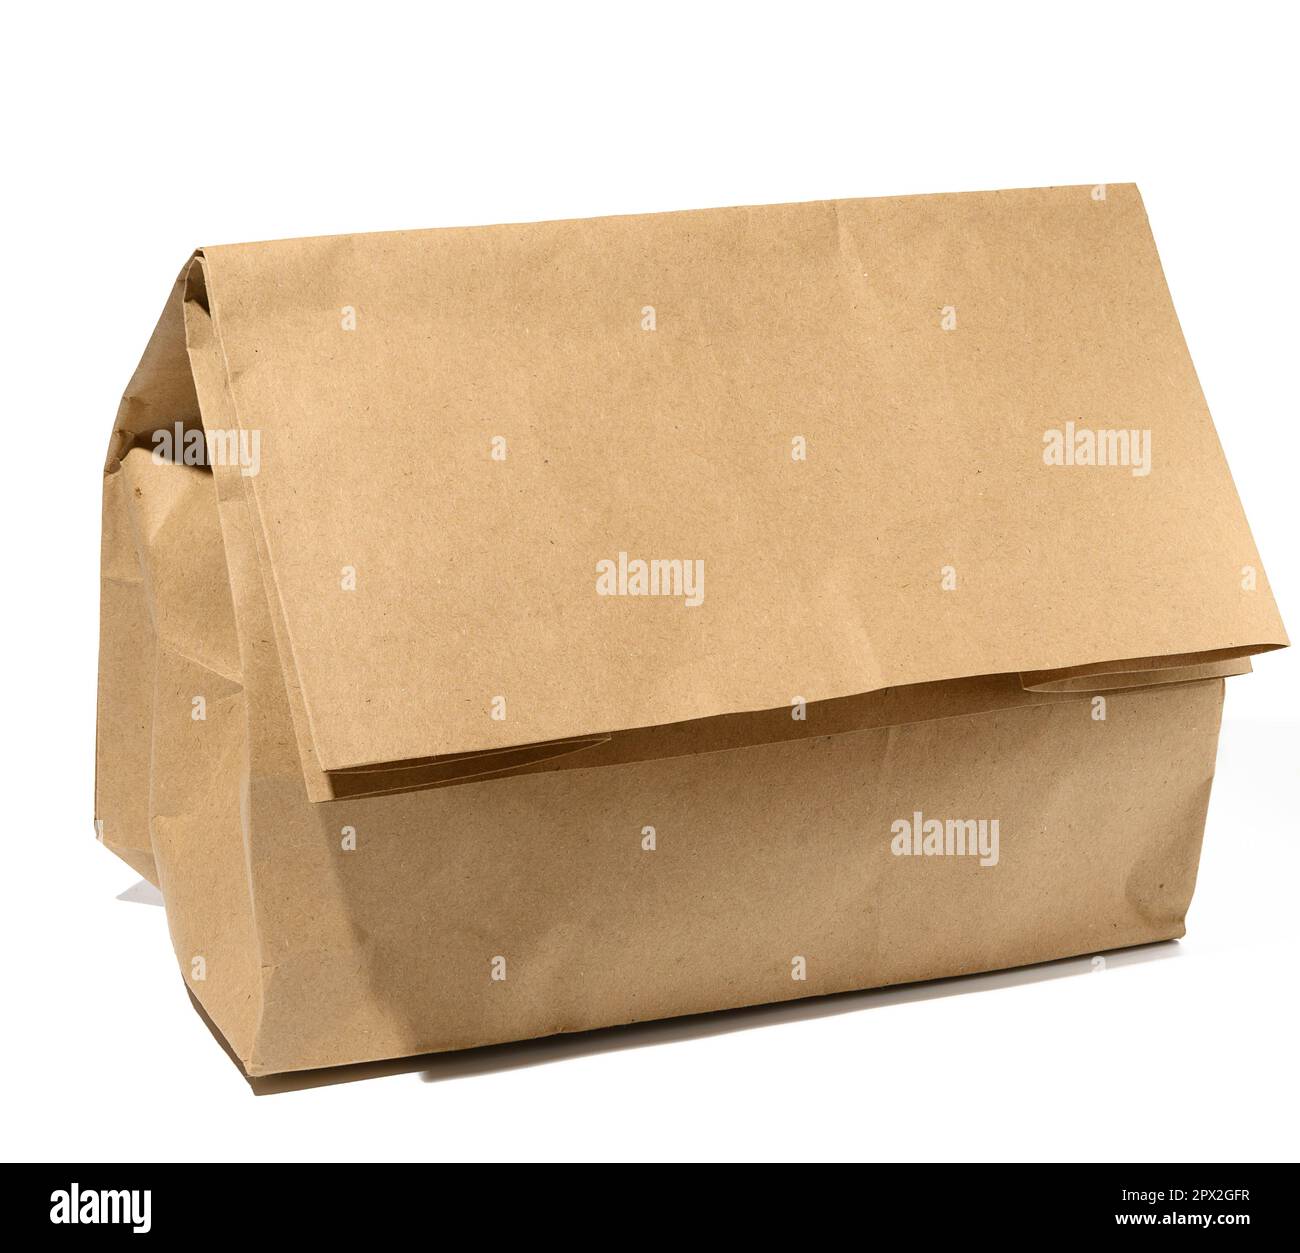 Sacchetto di carta marrone su fondo bianco, confezione per alimenti da asporto Foto Stock